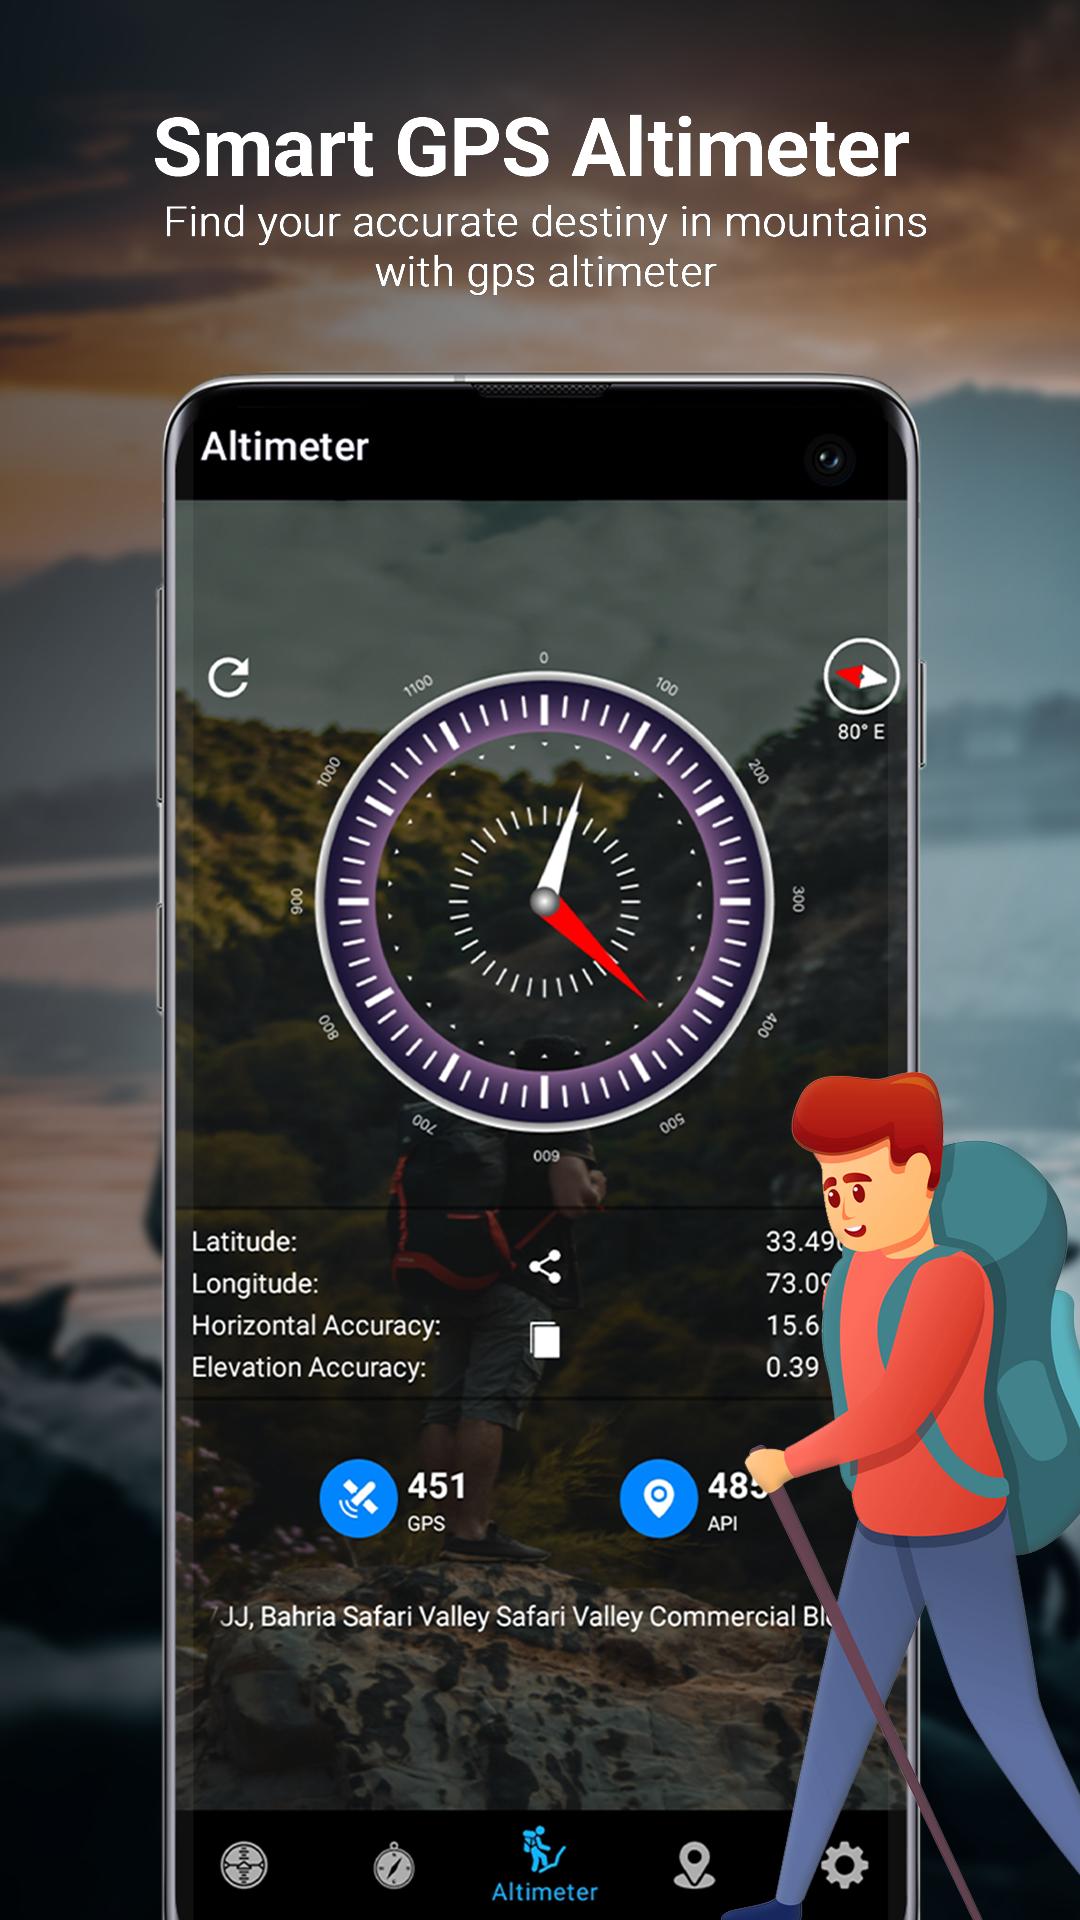 Altimètre précis – Applications sur Google Play